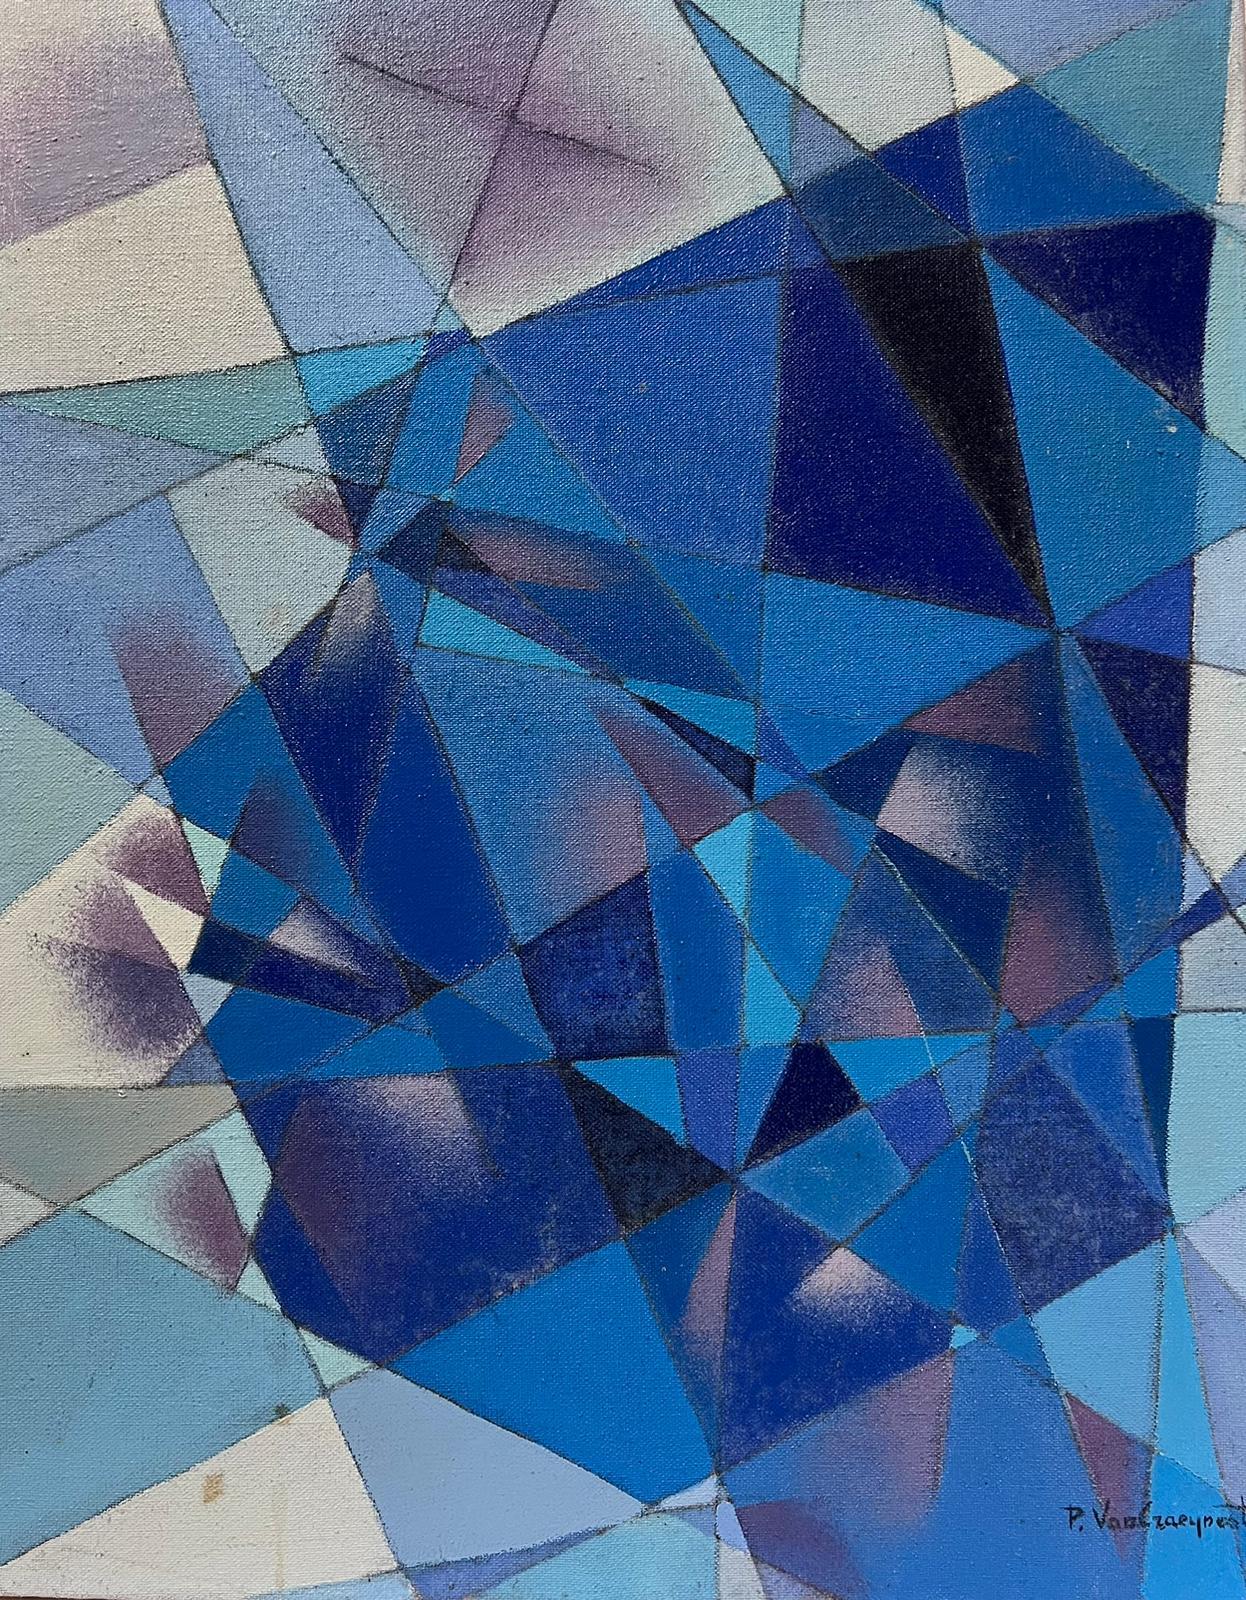 French Cubist 20th Century Abstract Painting – Blau-graues kubistisches französisches signiertes Ölgemälde, ca. 1970er Jahre, Periode